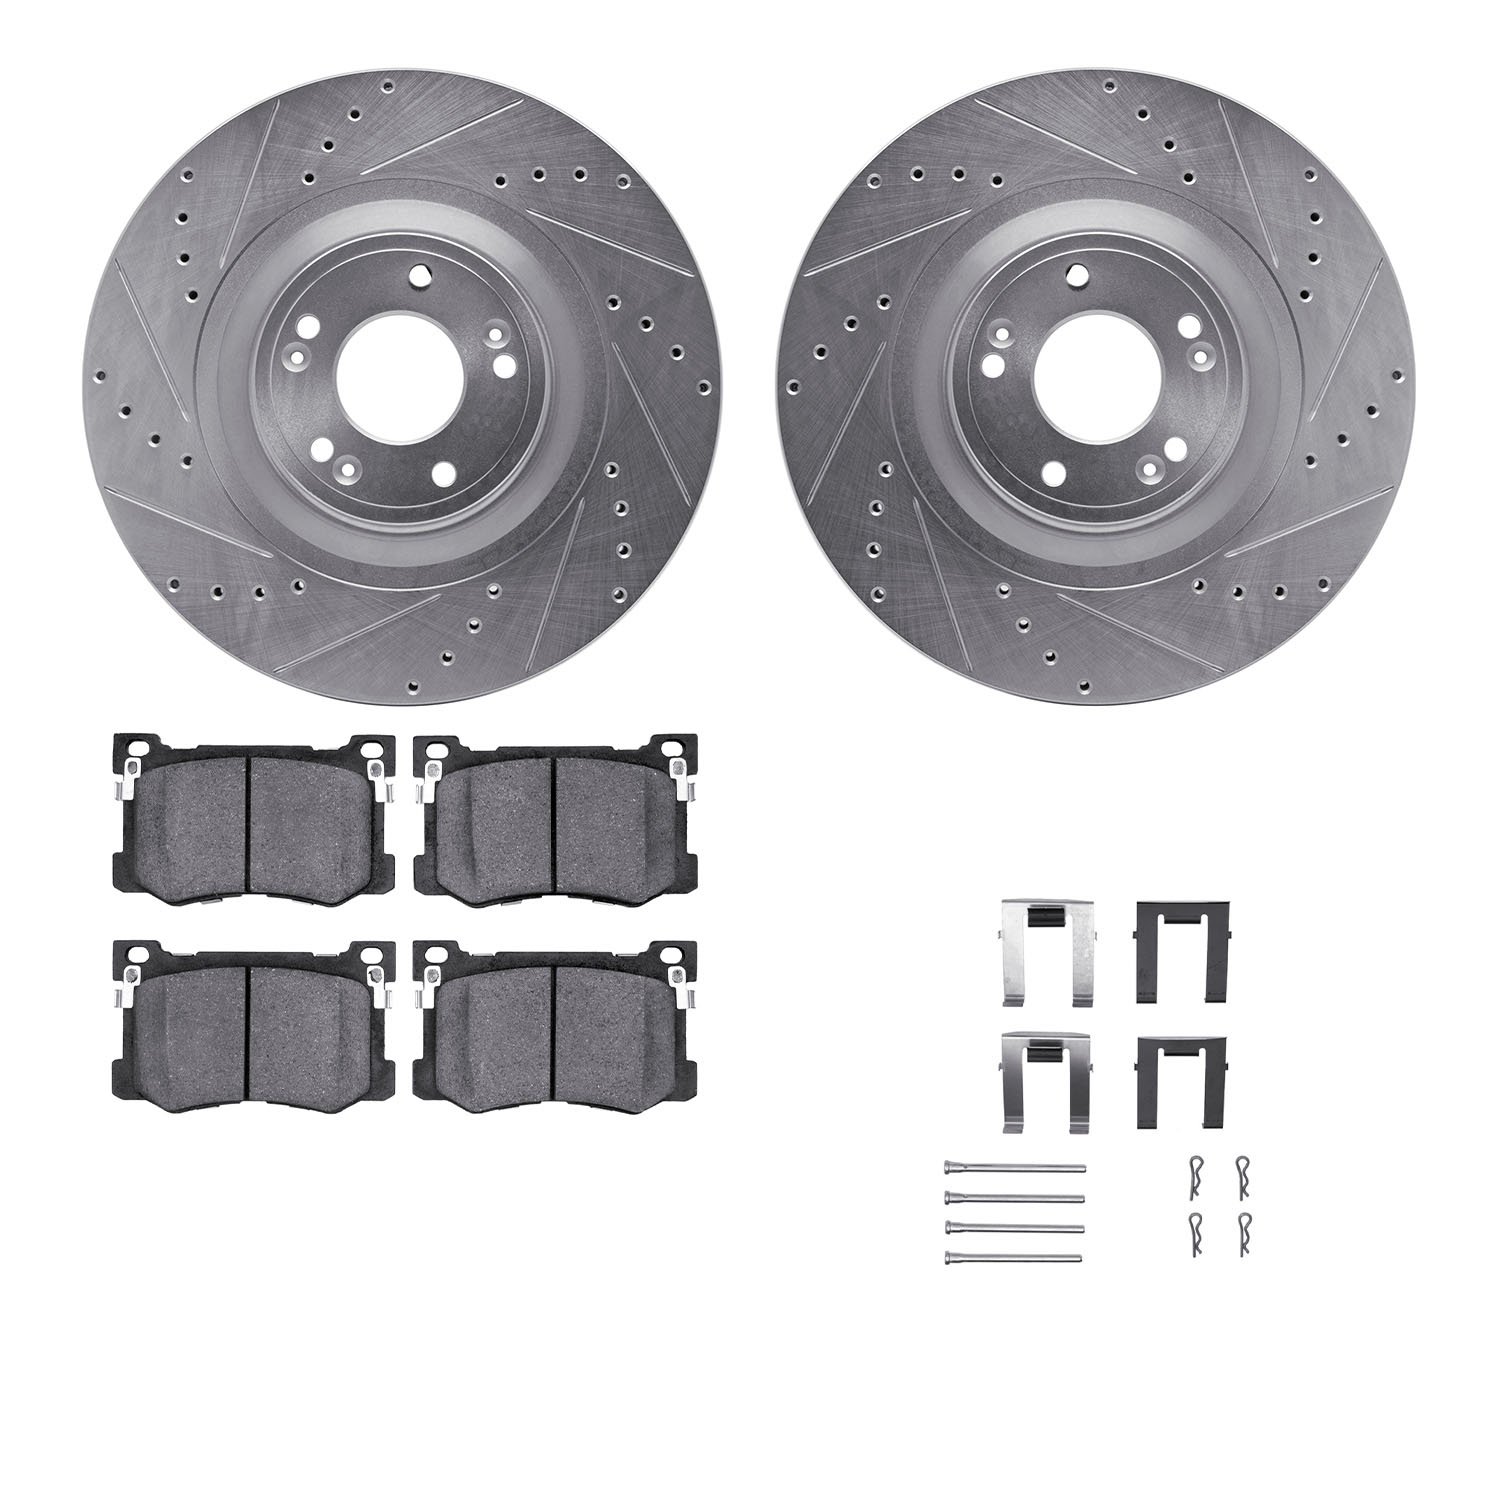 7312-03077 Drilled/Slotted Brake Rotor with 3000-Series Ceramic Brake Pads Kit & Hardware [Silver], 2015-2017 Kia/Hyundai/Genesi